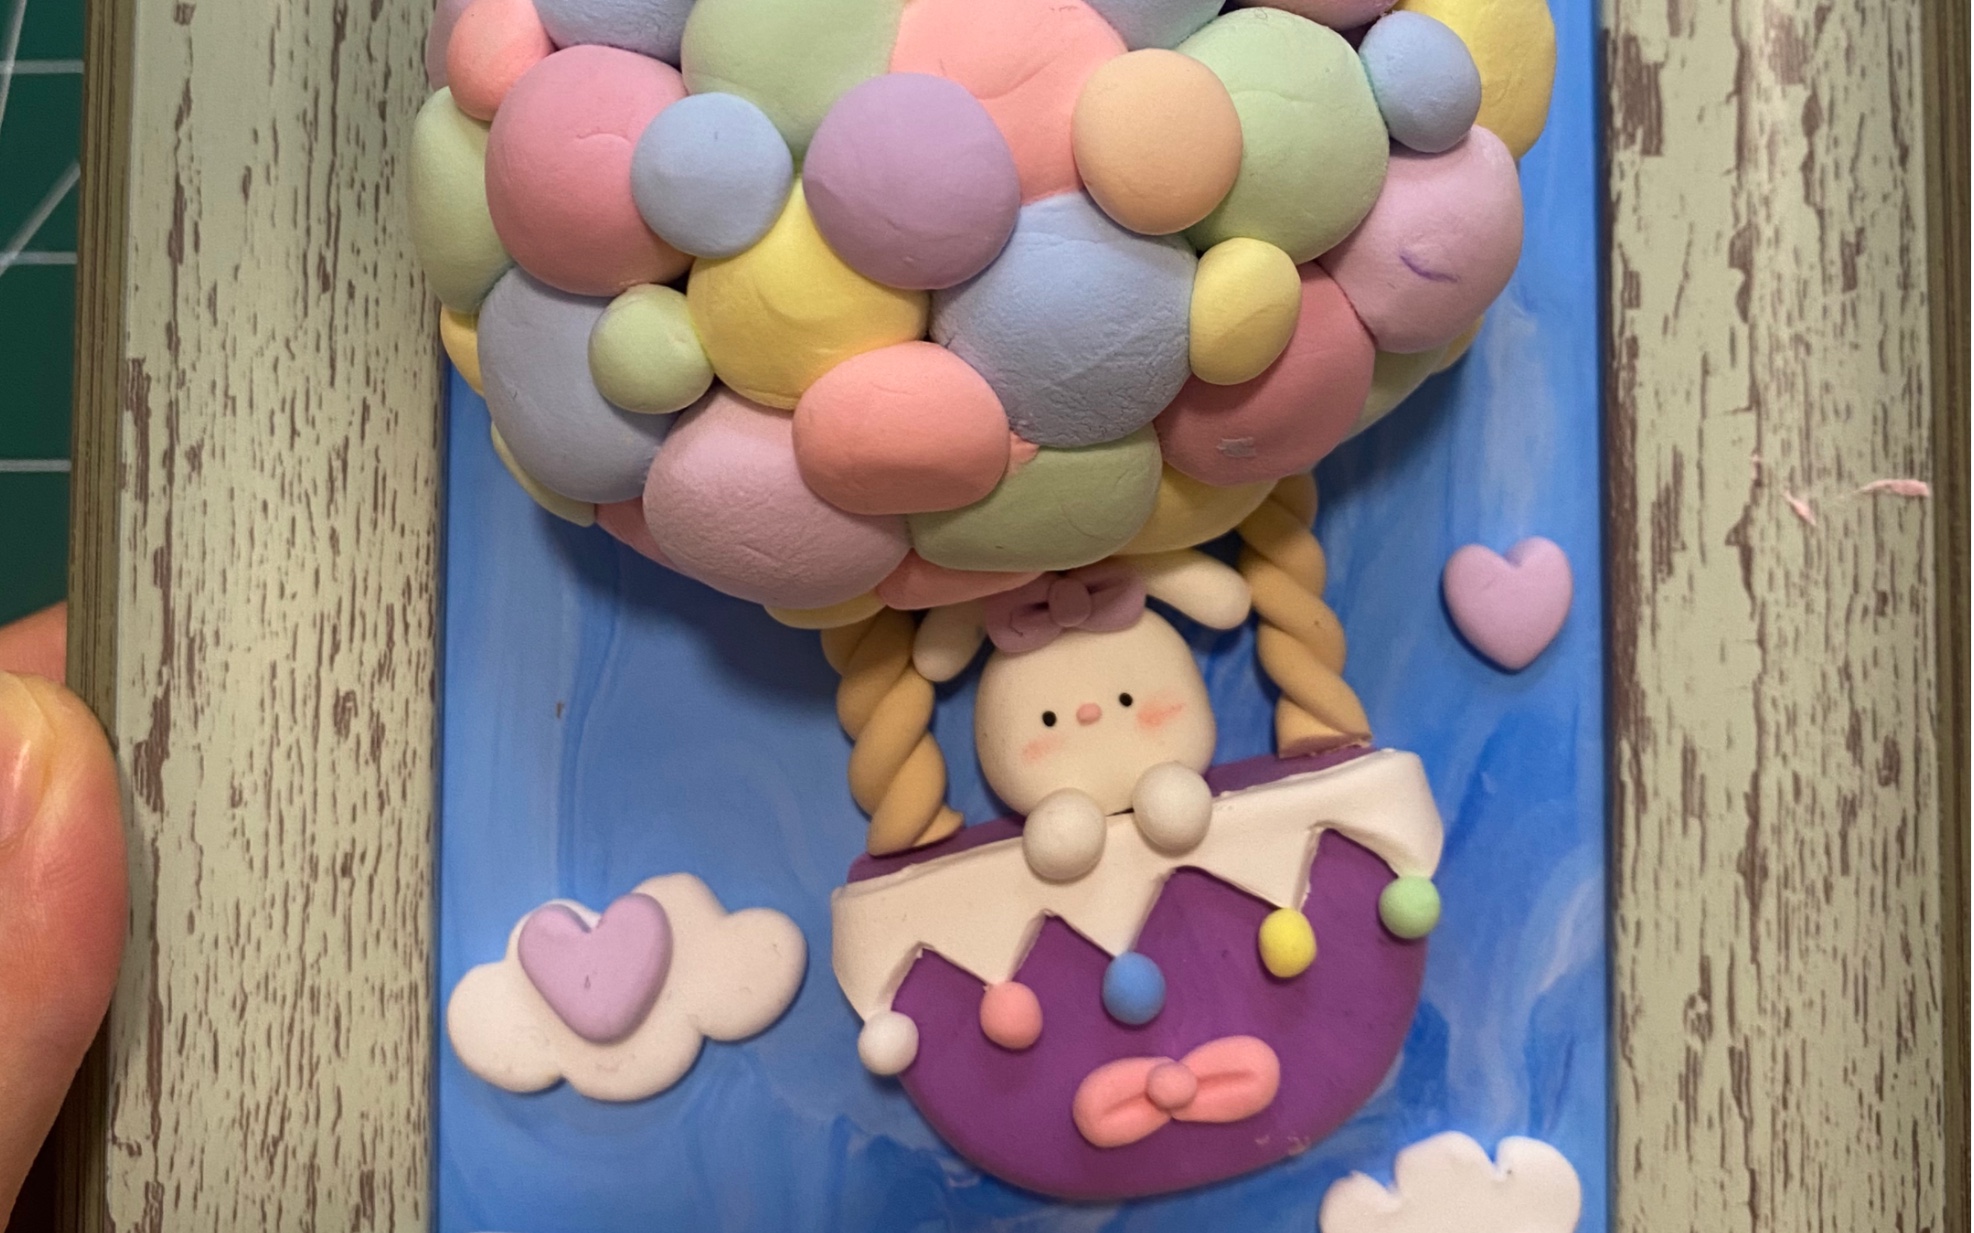 超轻粘土制作一幅好看的粘土画吧,可爱的小兔子热气球